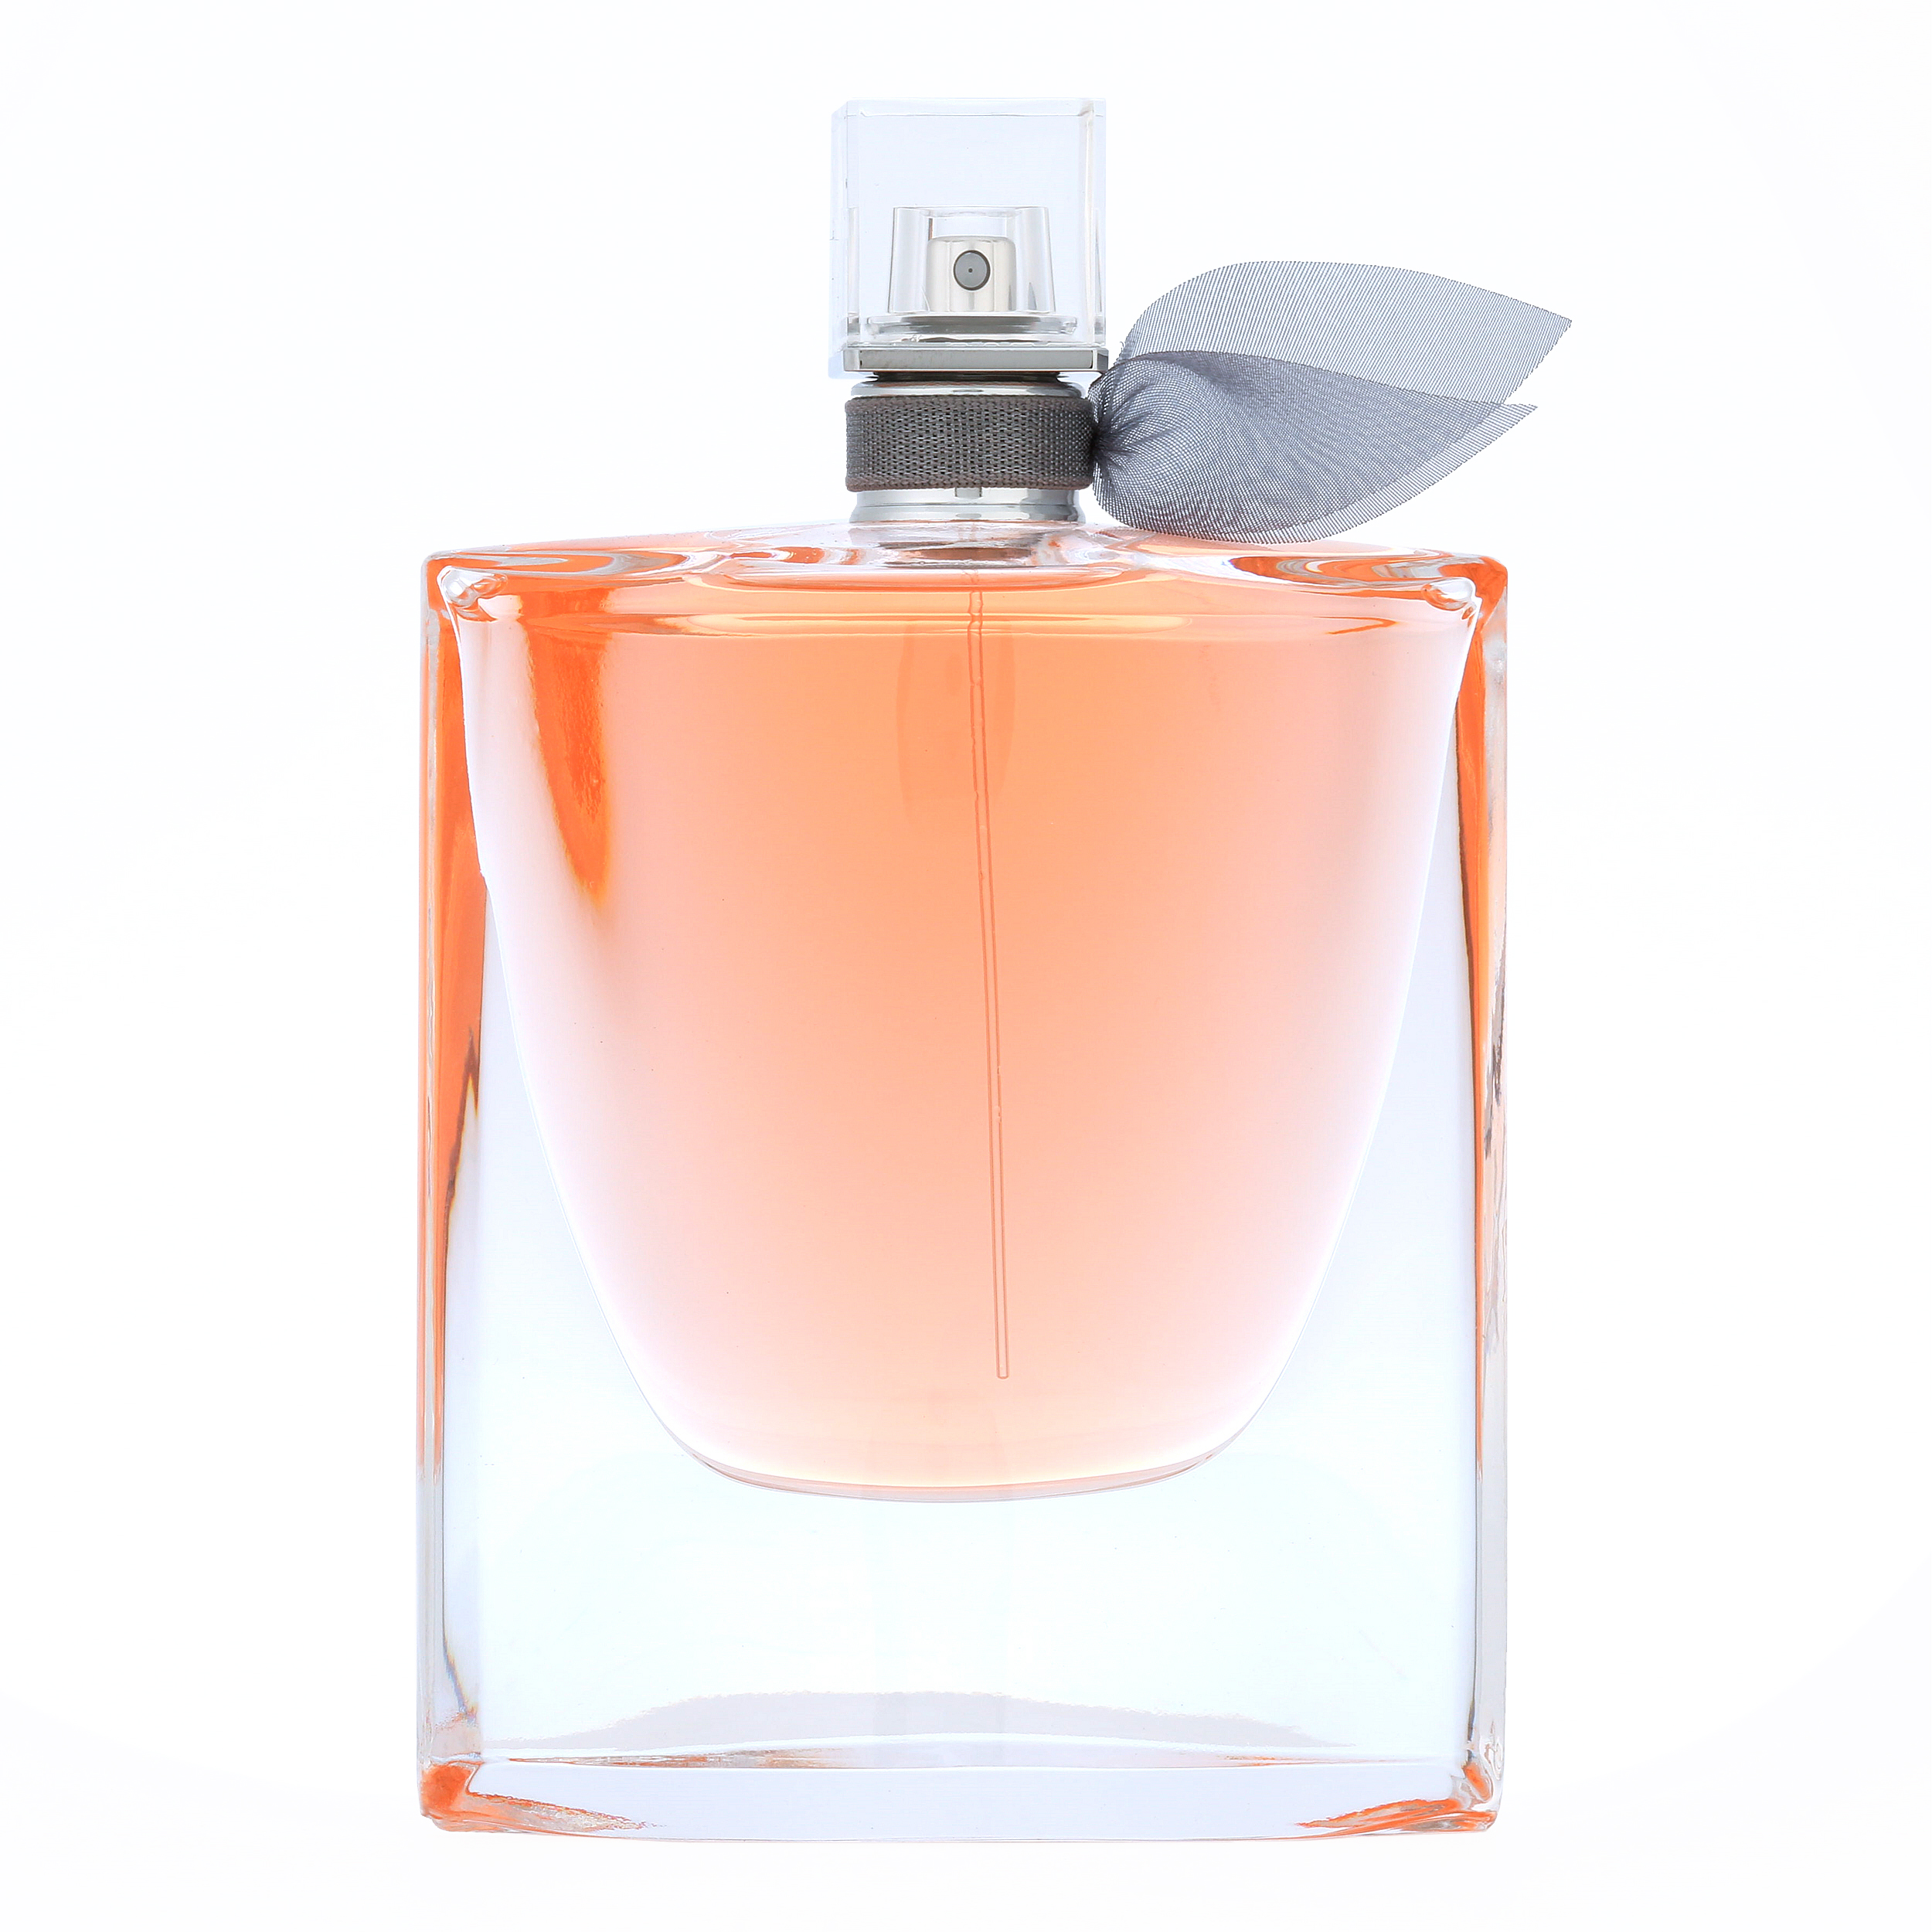 Lancome La Vie Est Belle Eau De Parfum Spray for Women 1 oz - image 1 of 3